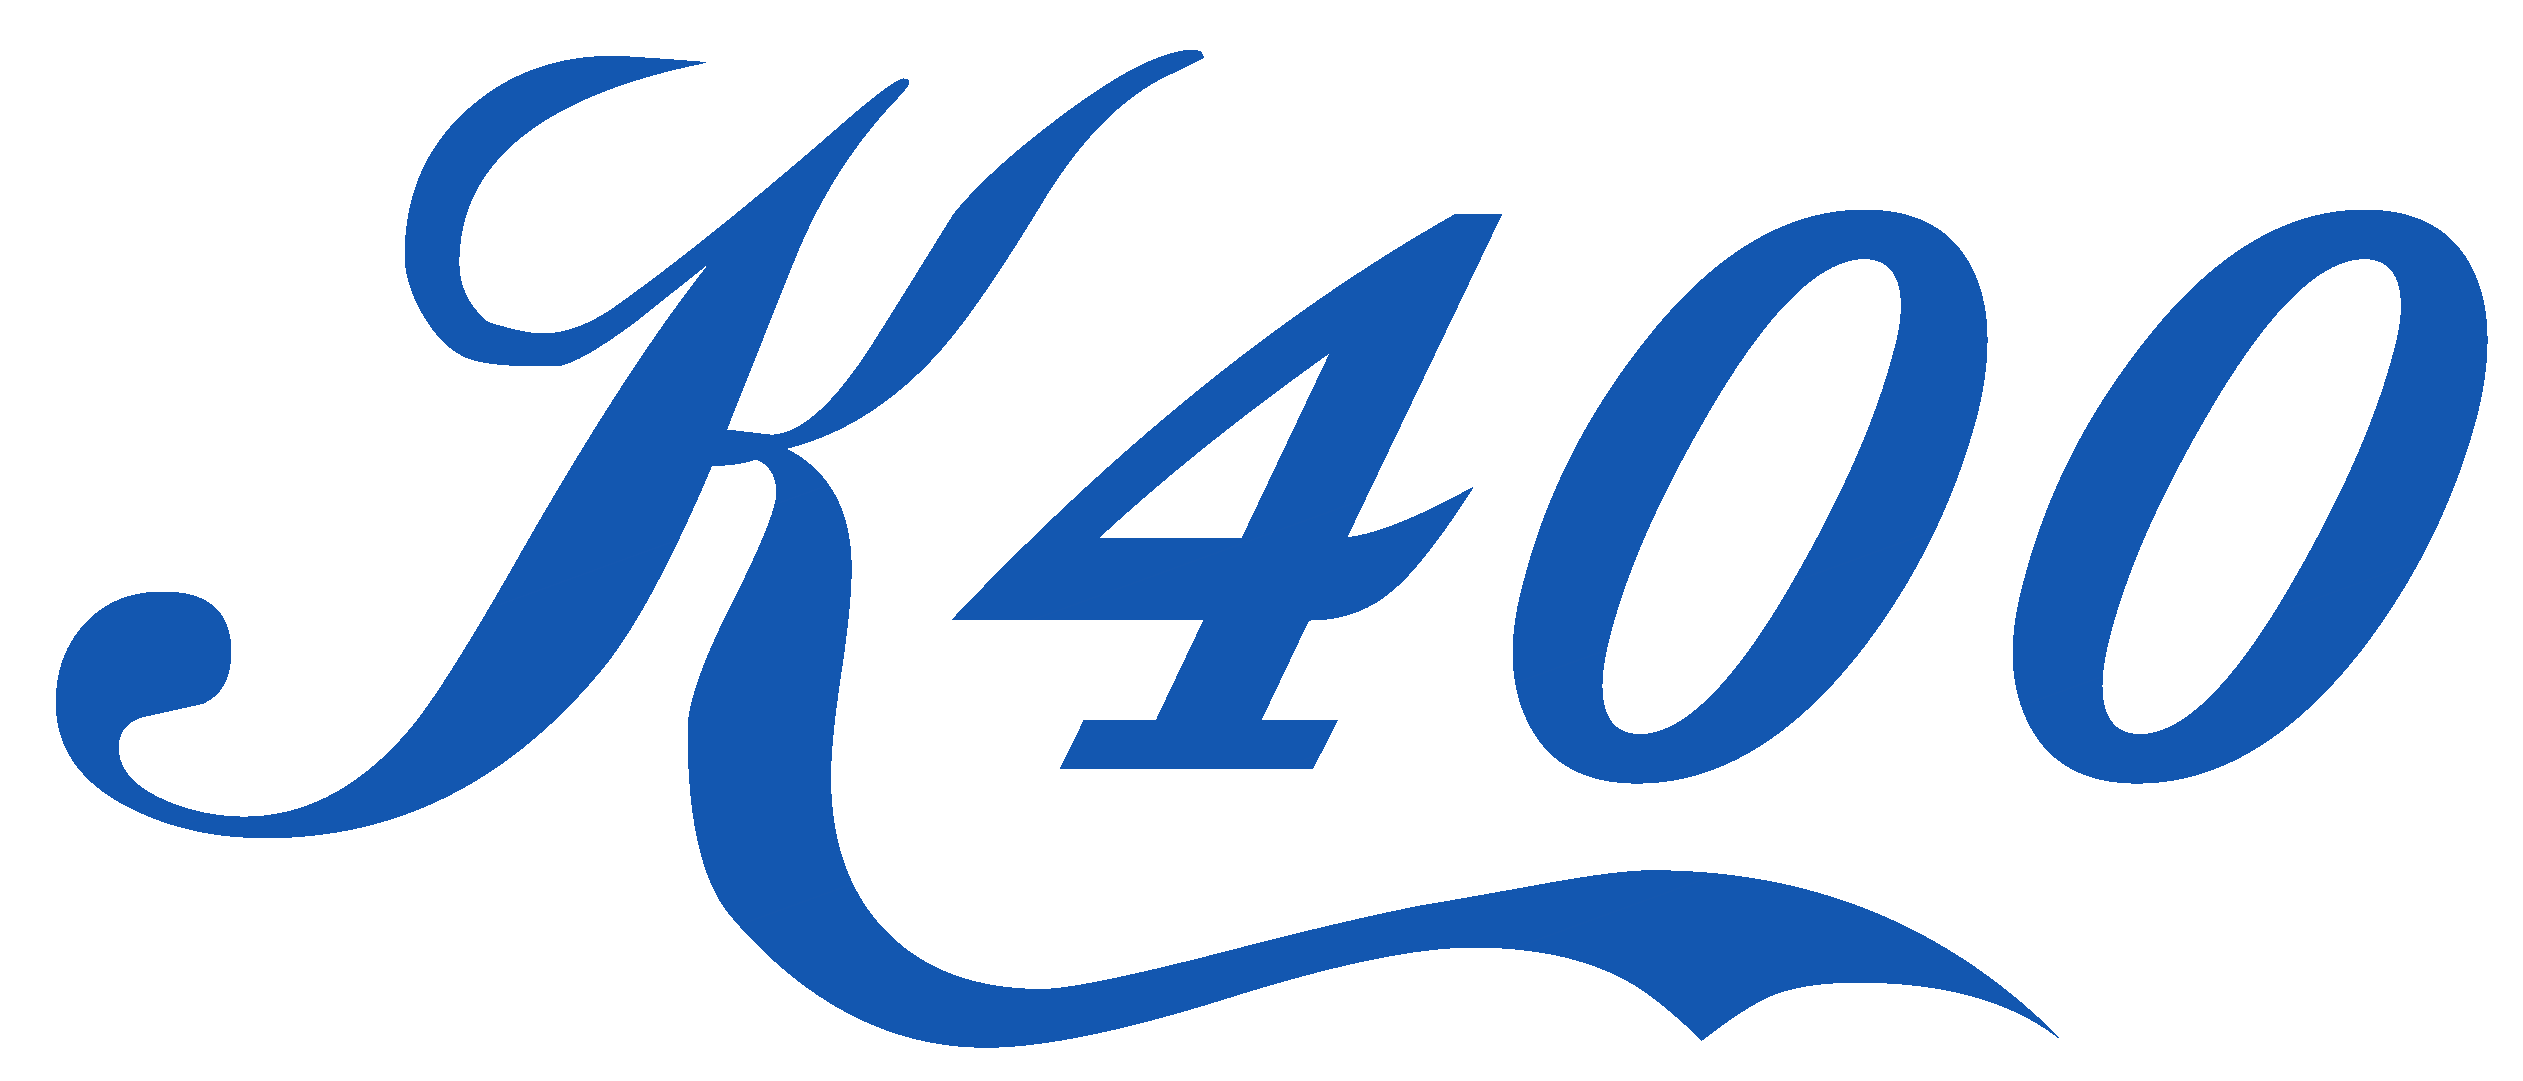 K400